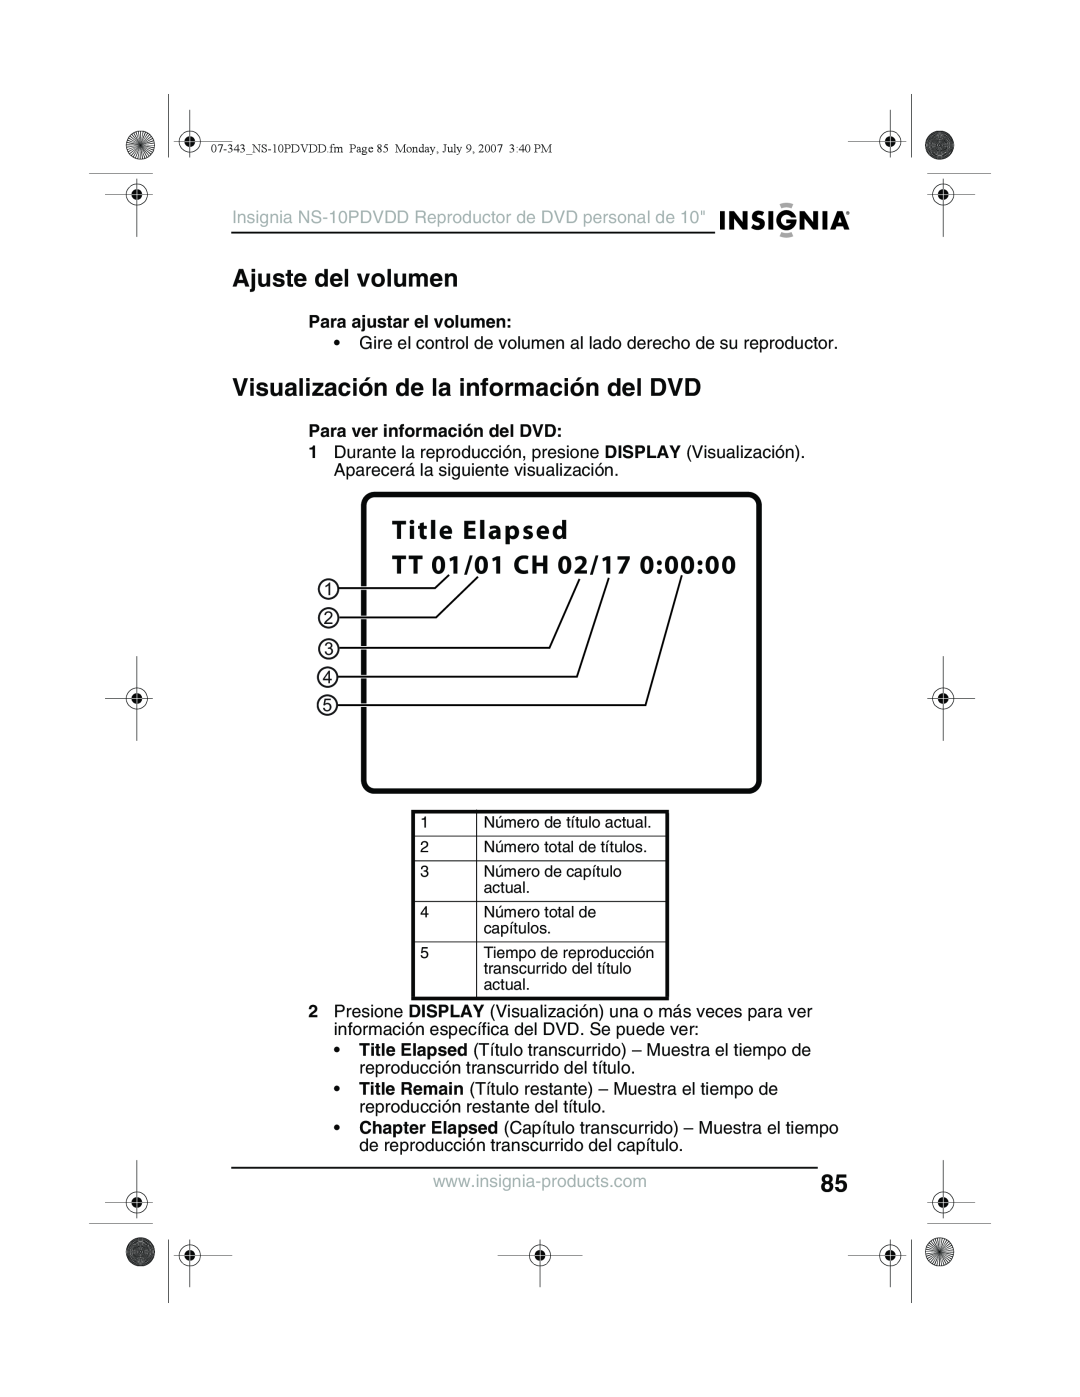 Insignia NS-10PDVDD manual Ajuste del volumen, Visualización de la información del DVD, Para ajustar el volumen 